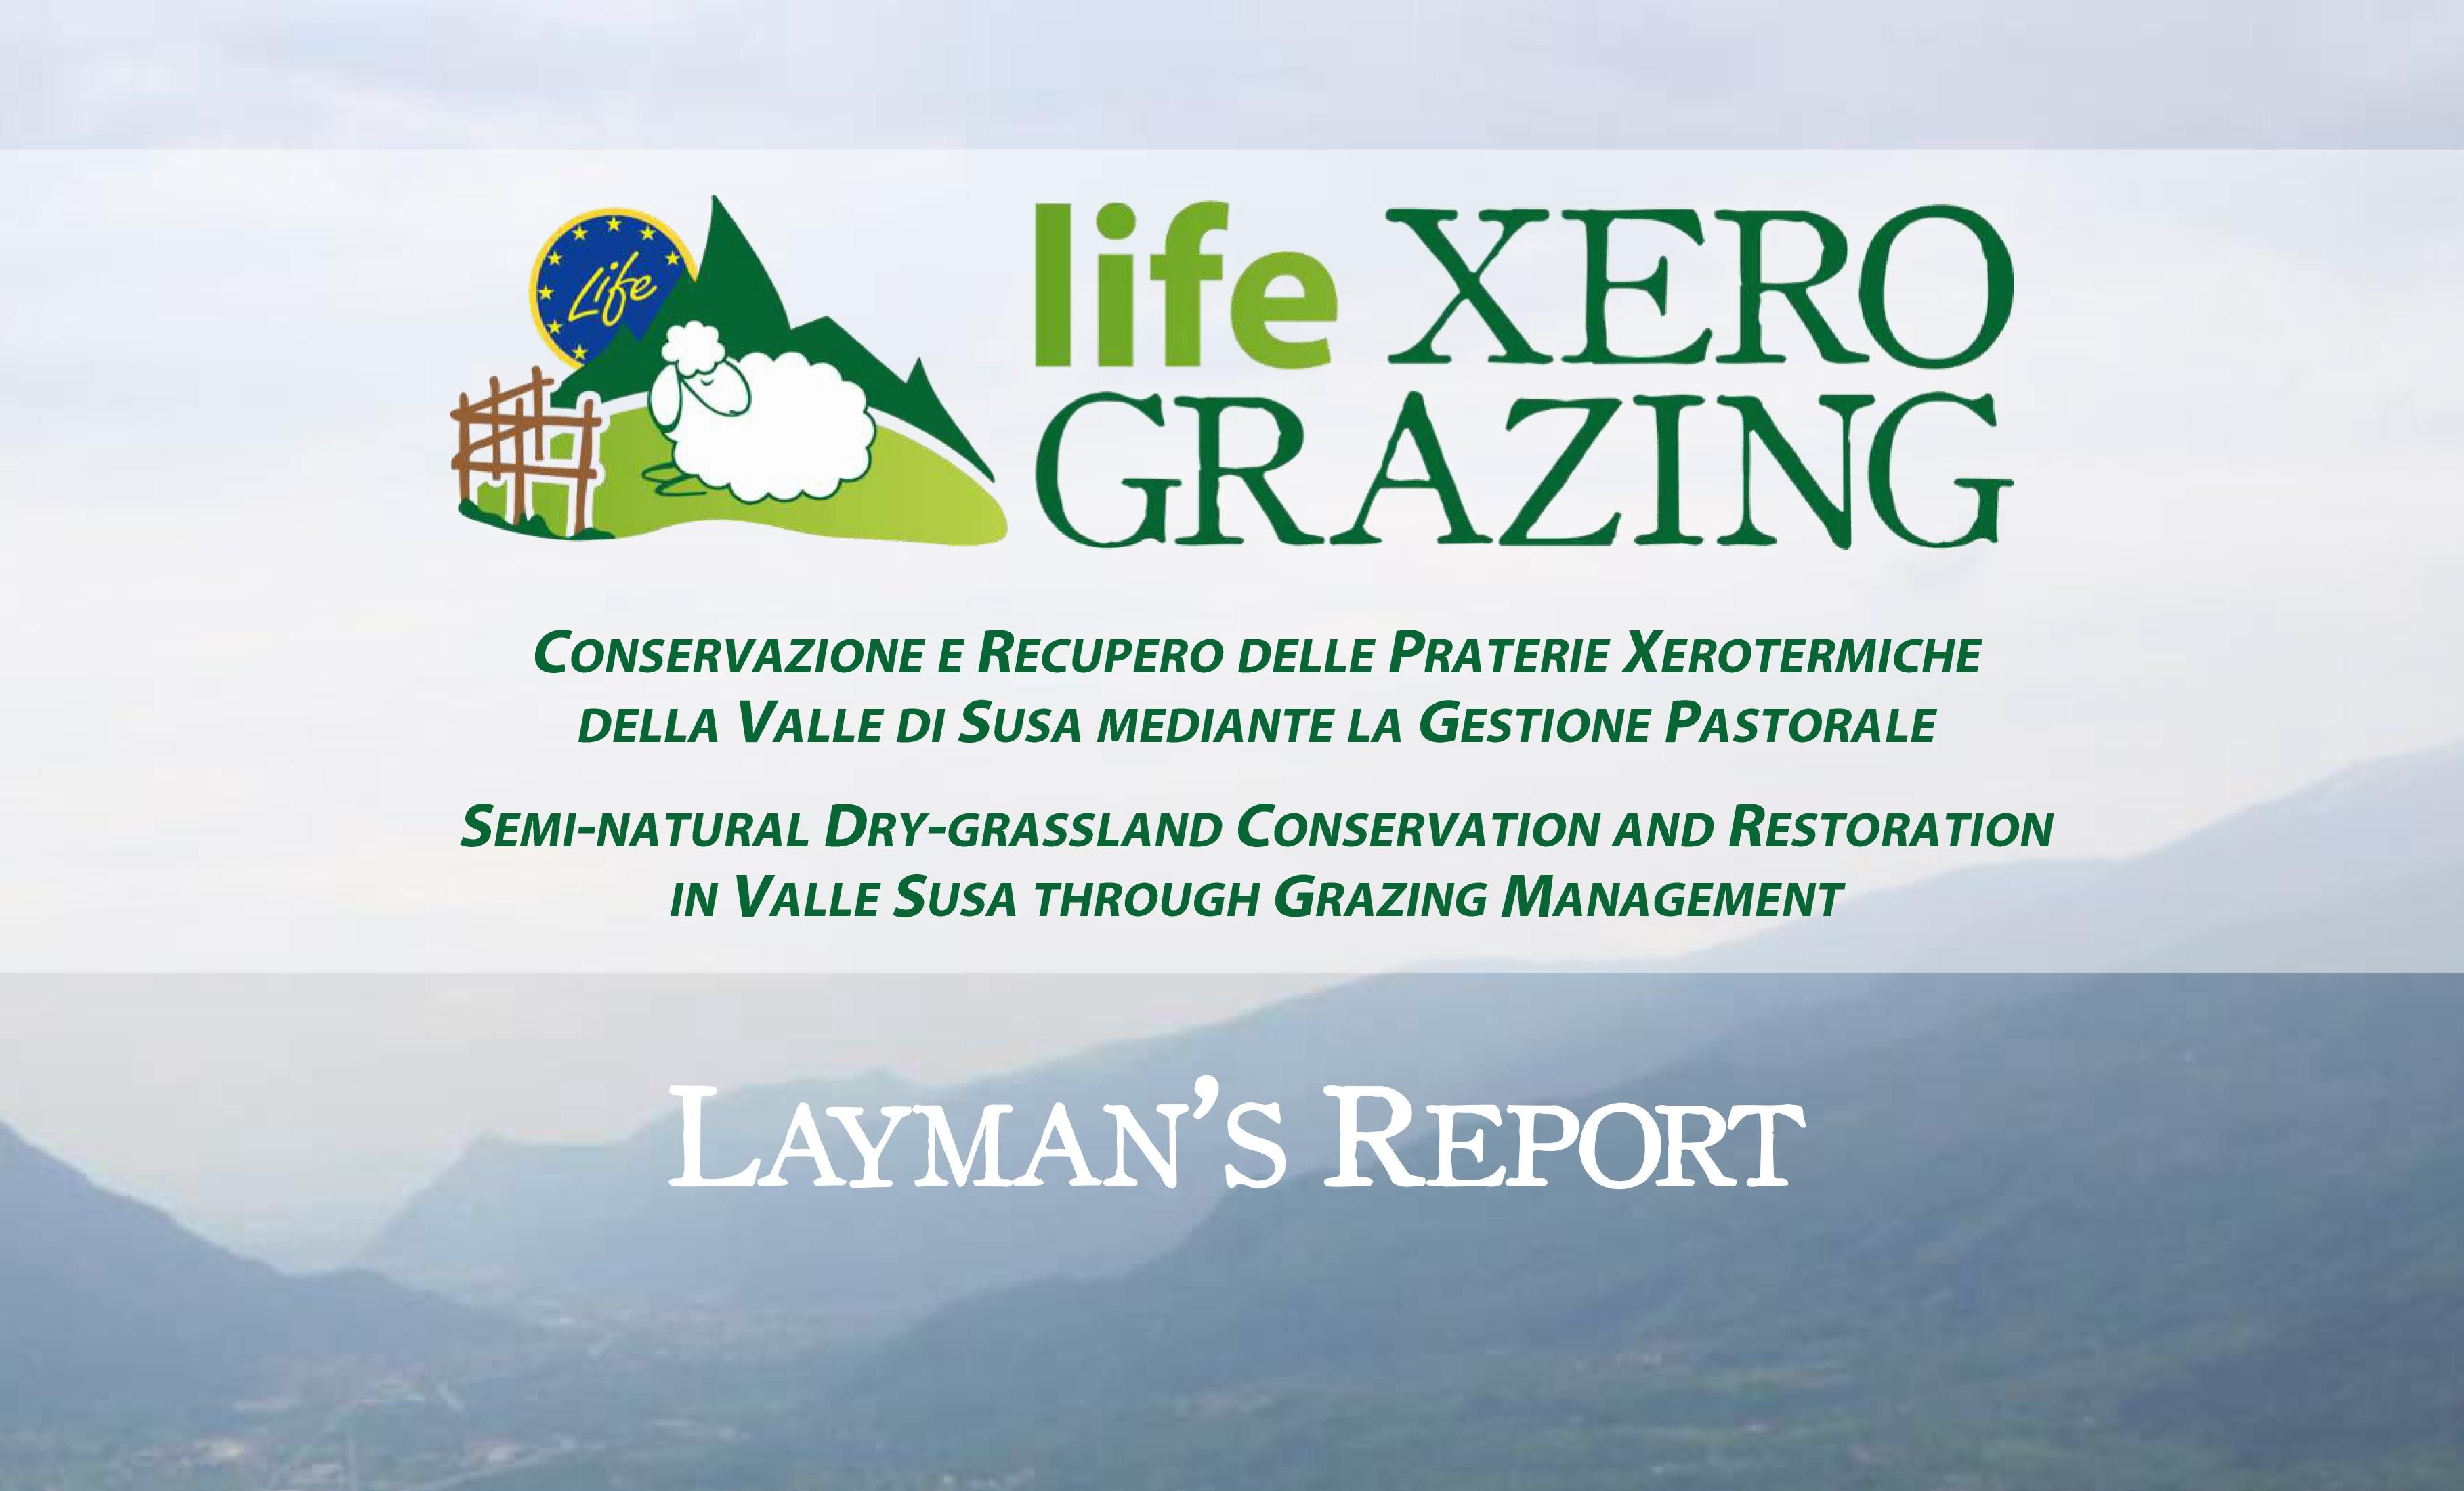 SCARICA IL LAYMAN'S REPORT DEL PROGETTO